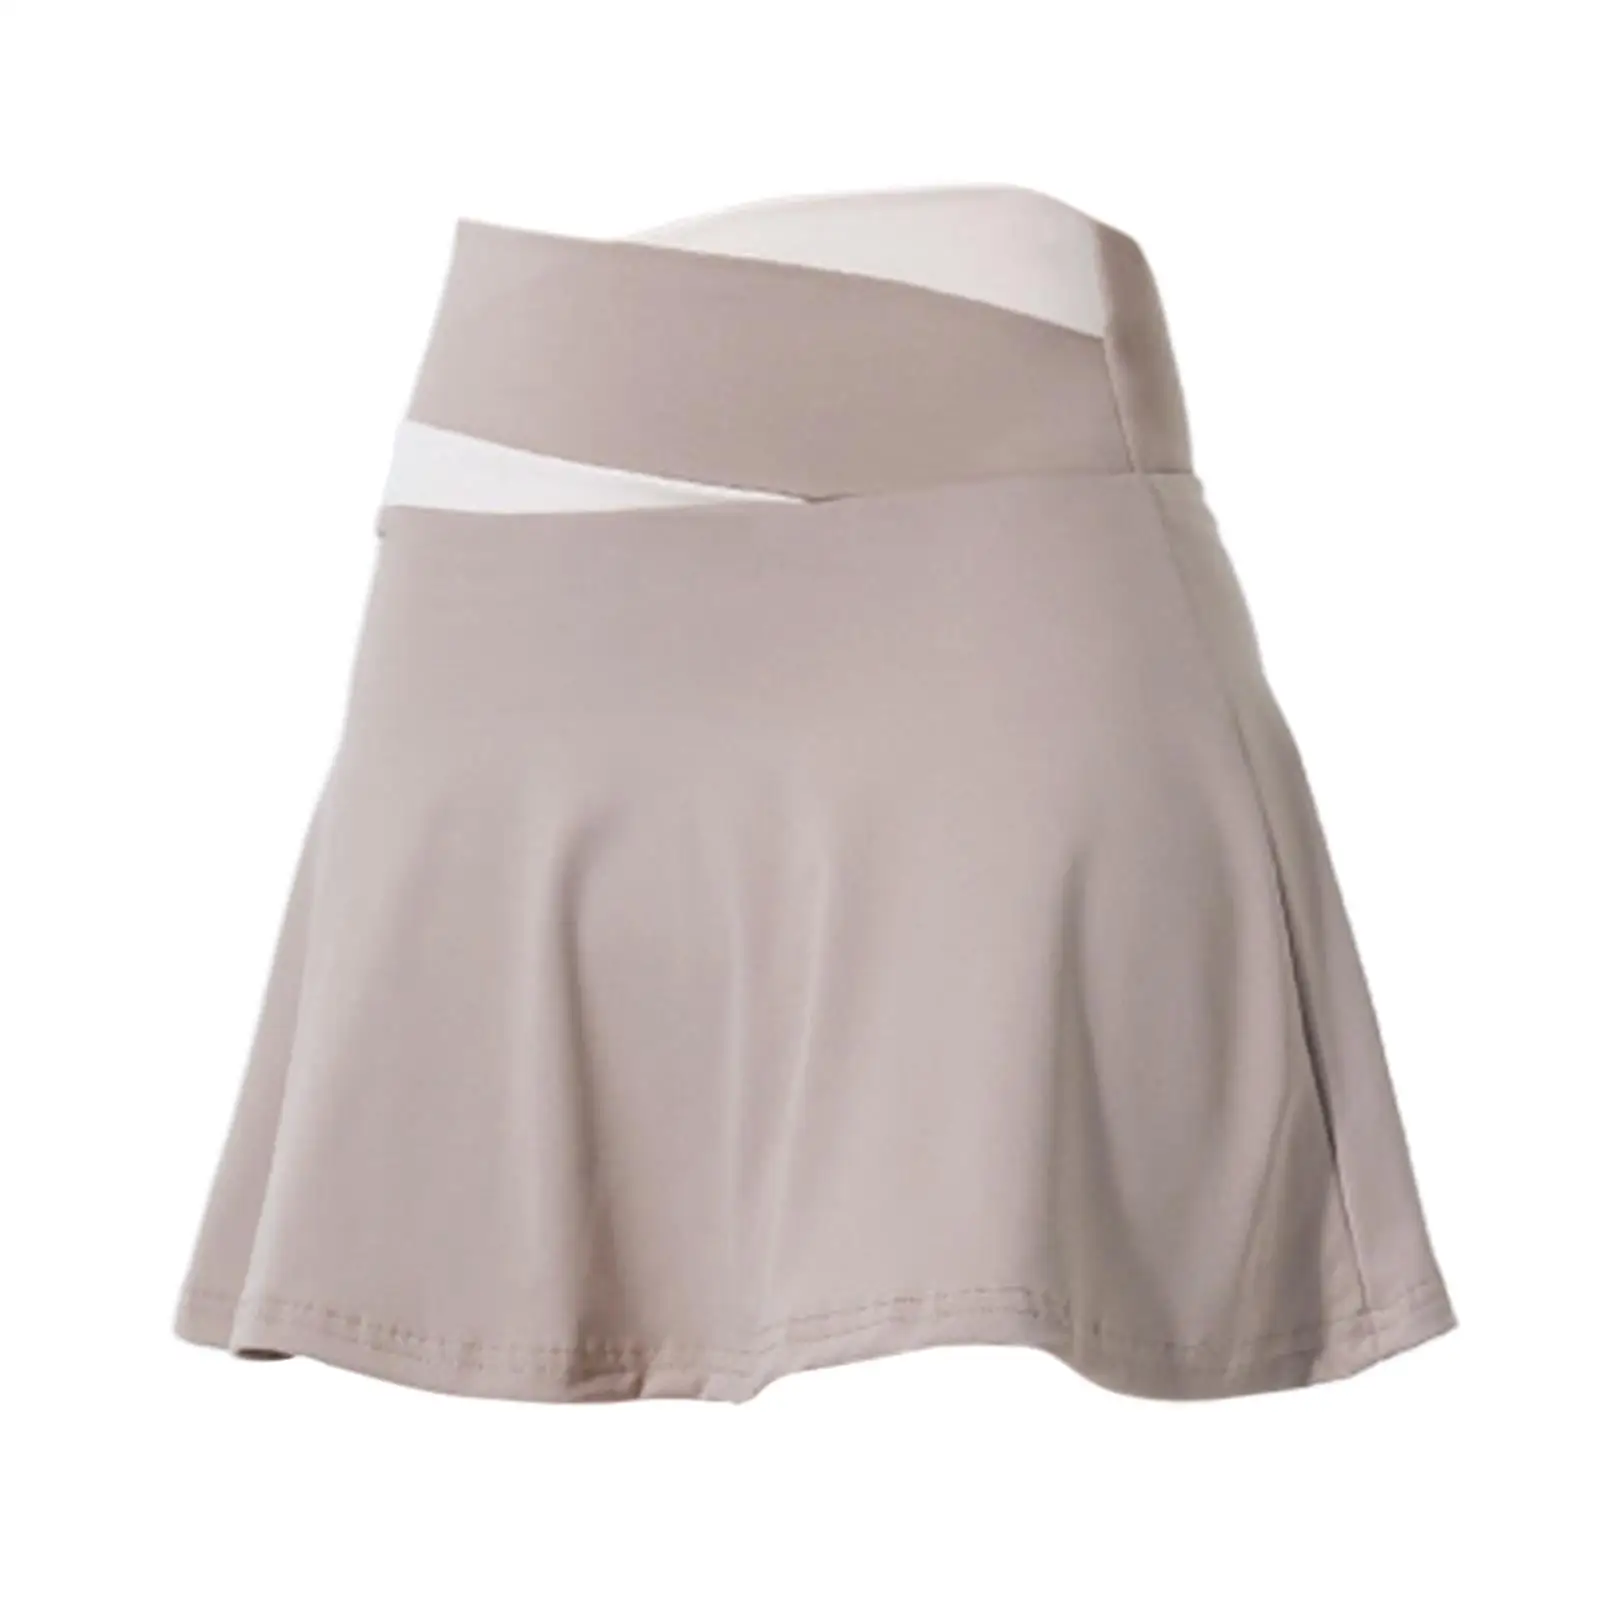 Tennis Skirts Short Skirts Mini Skirt Activewear Women`s Culottes Skirt Badminton Skirt for Golf Sports Exercise